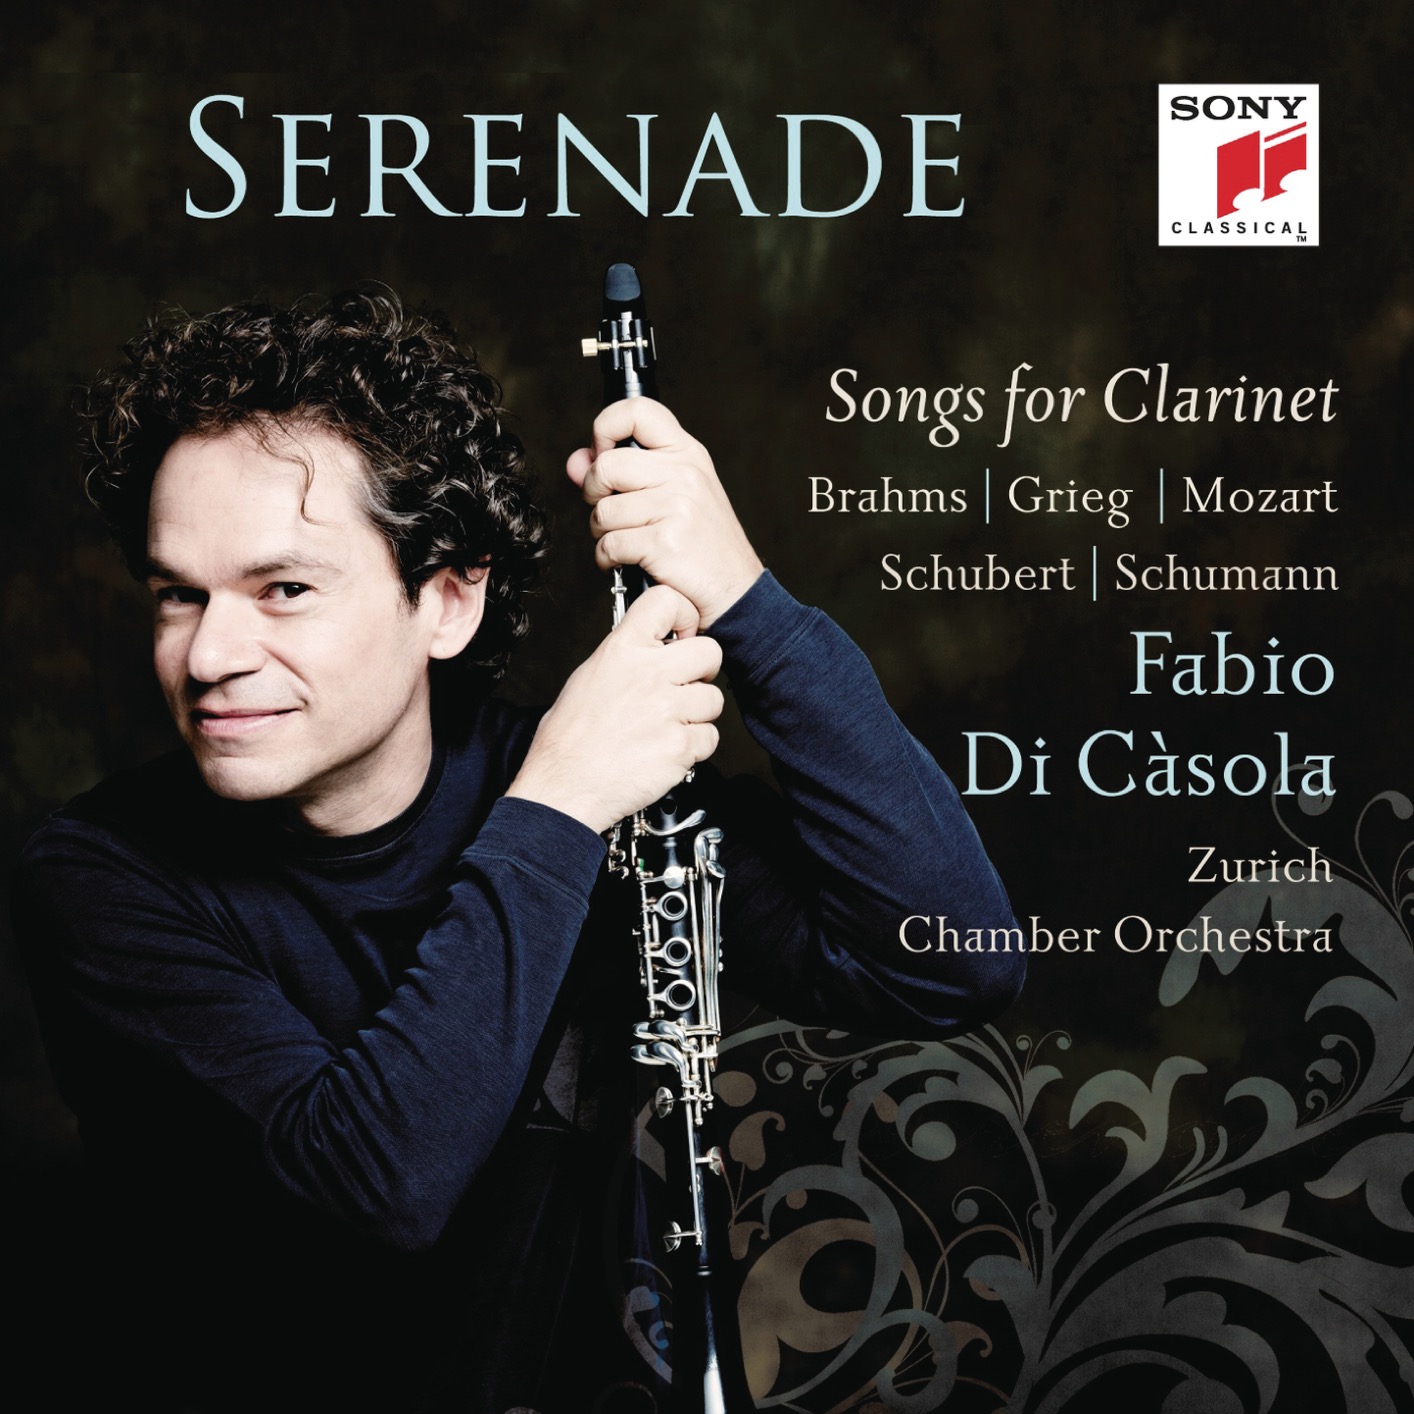 Fabio Di Casola - Serenade - Songs For Clarinet (2013/2019) [FLAC 24bit/44,1kHz]